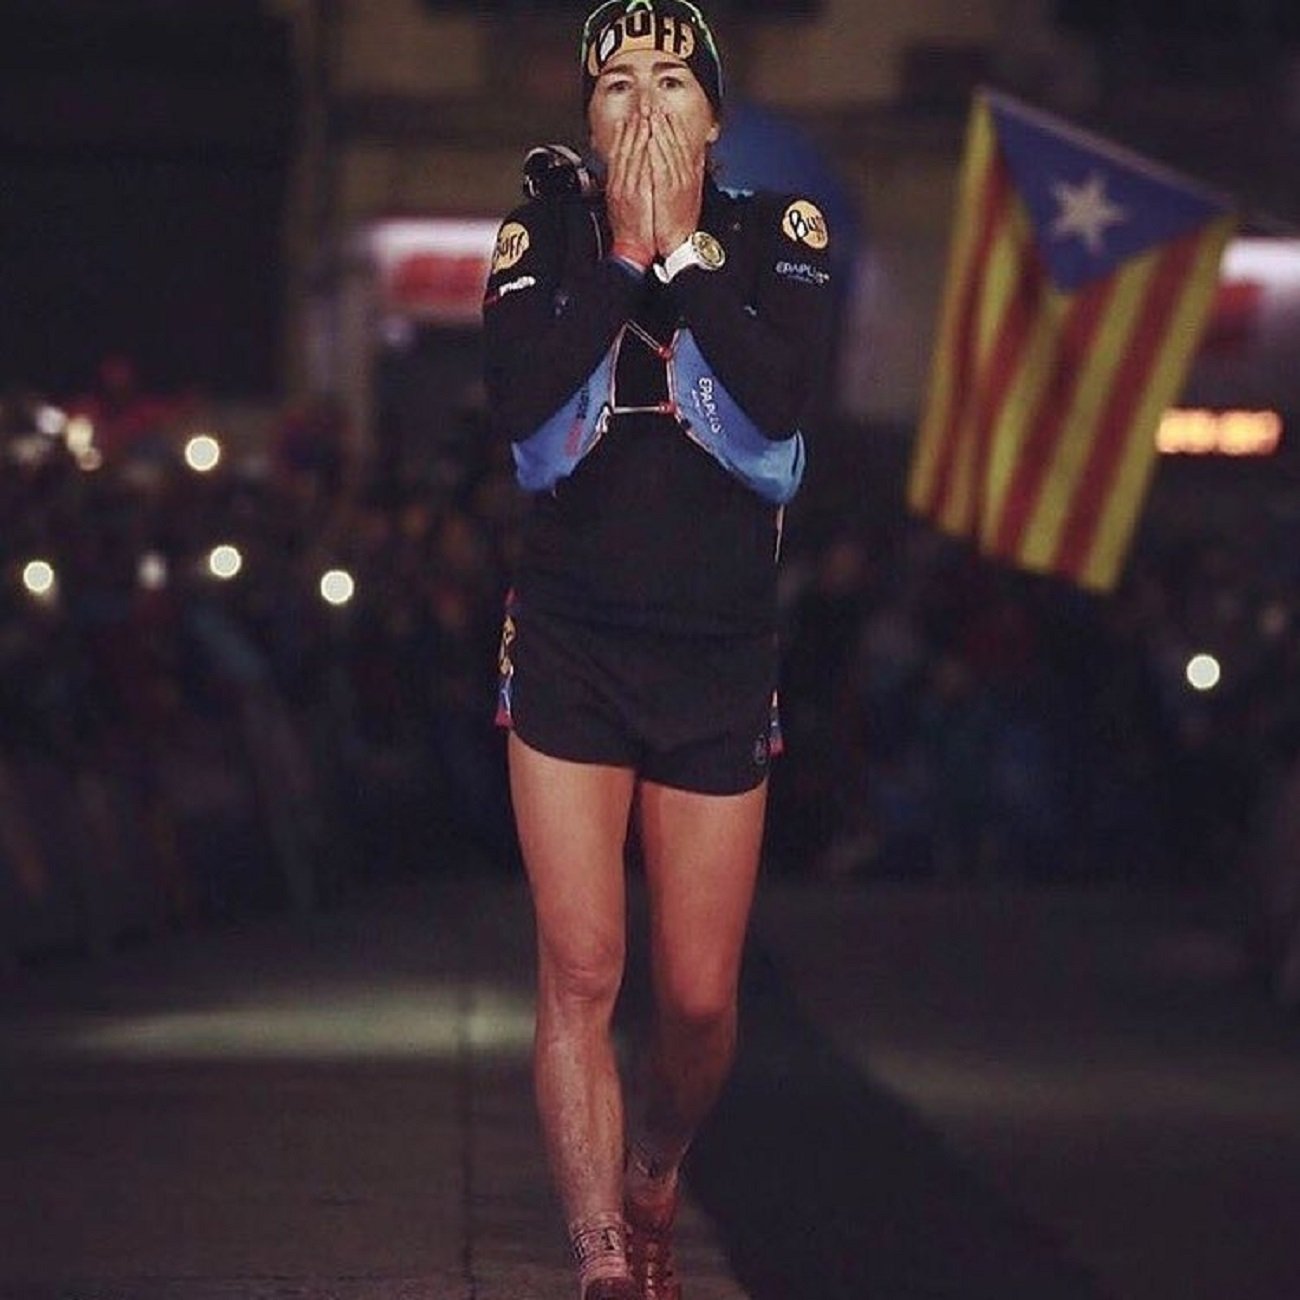 La ultraatleta catalana Núria Picas cataloga de "farsa" i "vergonya" el judici al procés